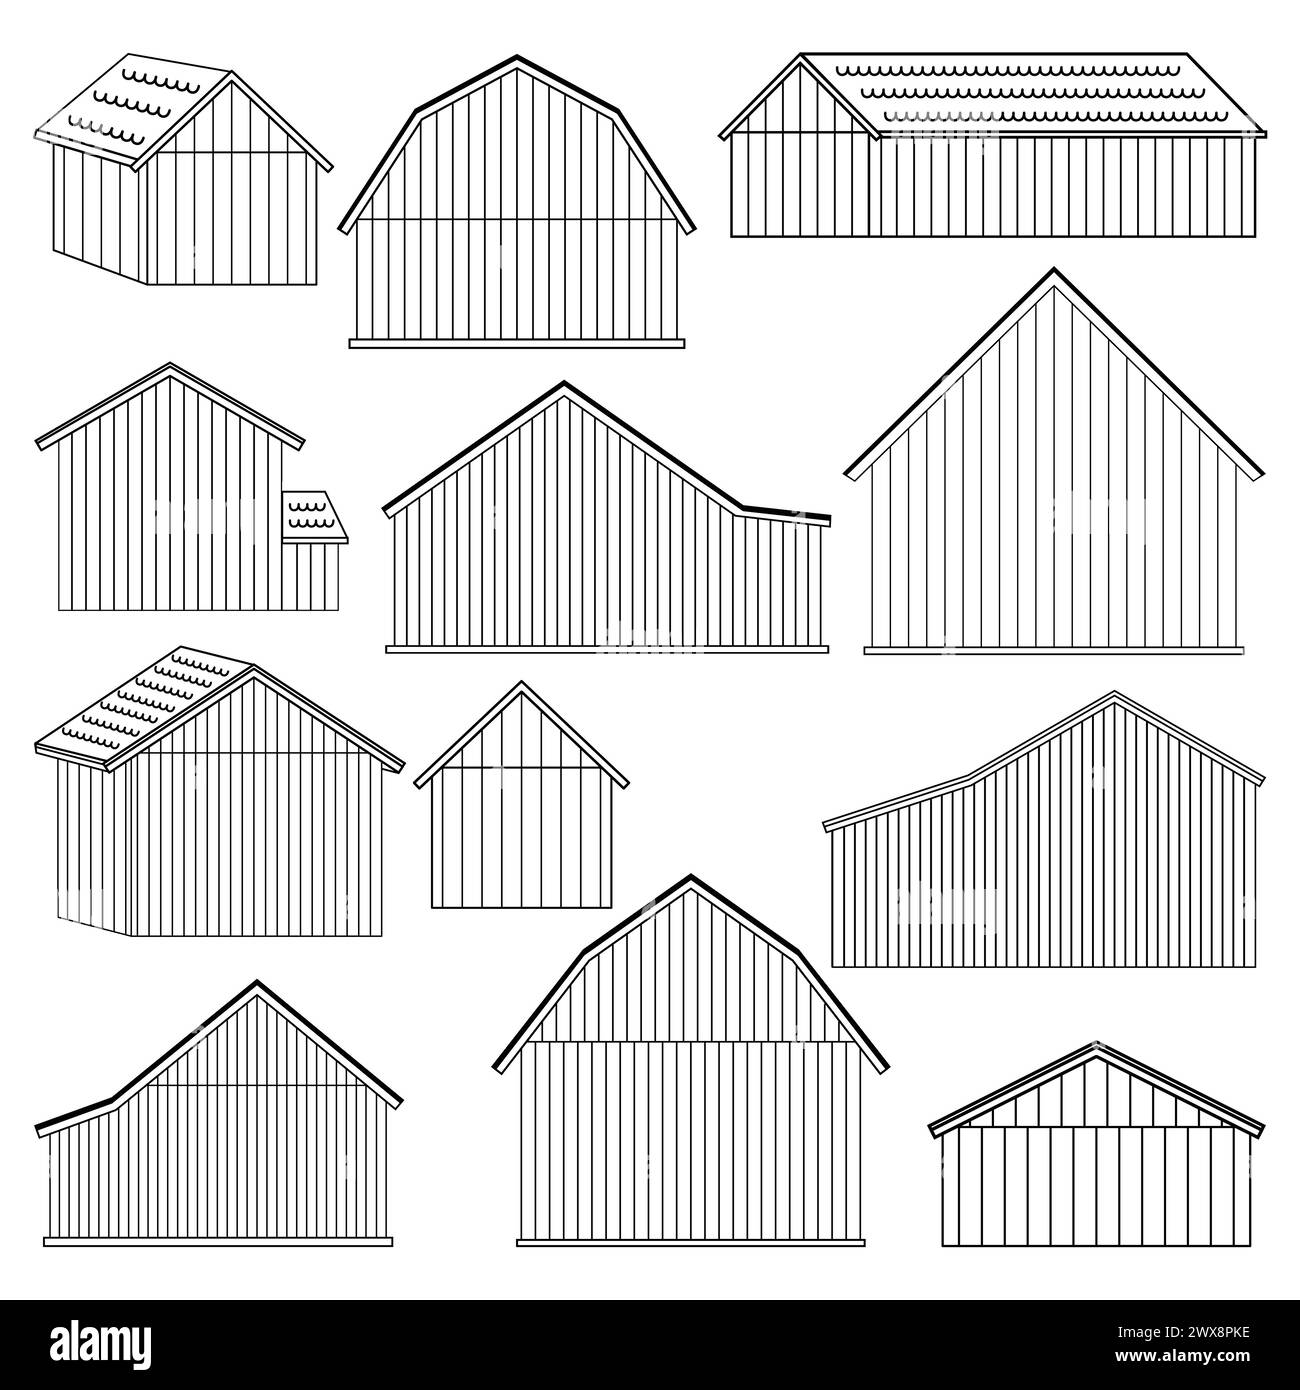 Grande serie di case o fienili in legno senza porte e finestre. Illustrazioni vettoriali isolate su sfondo bianco per costruttore o colorazione Illustrazione Vettoriale